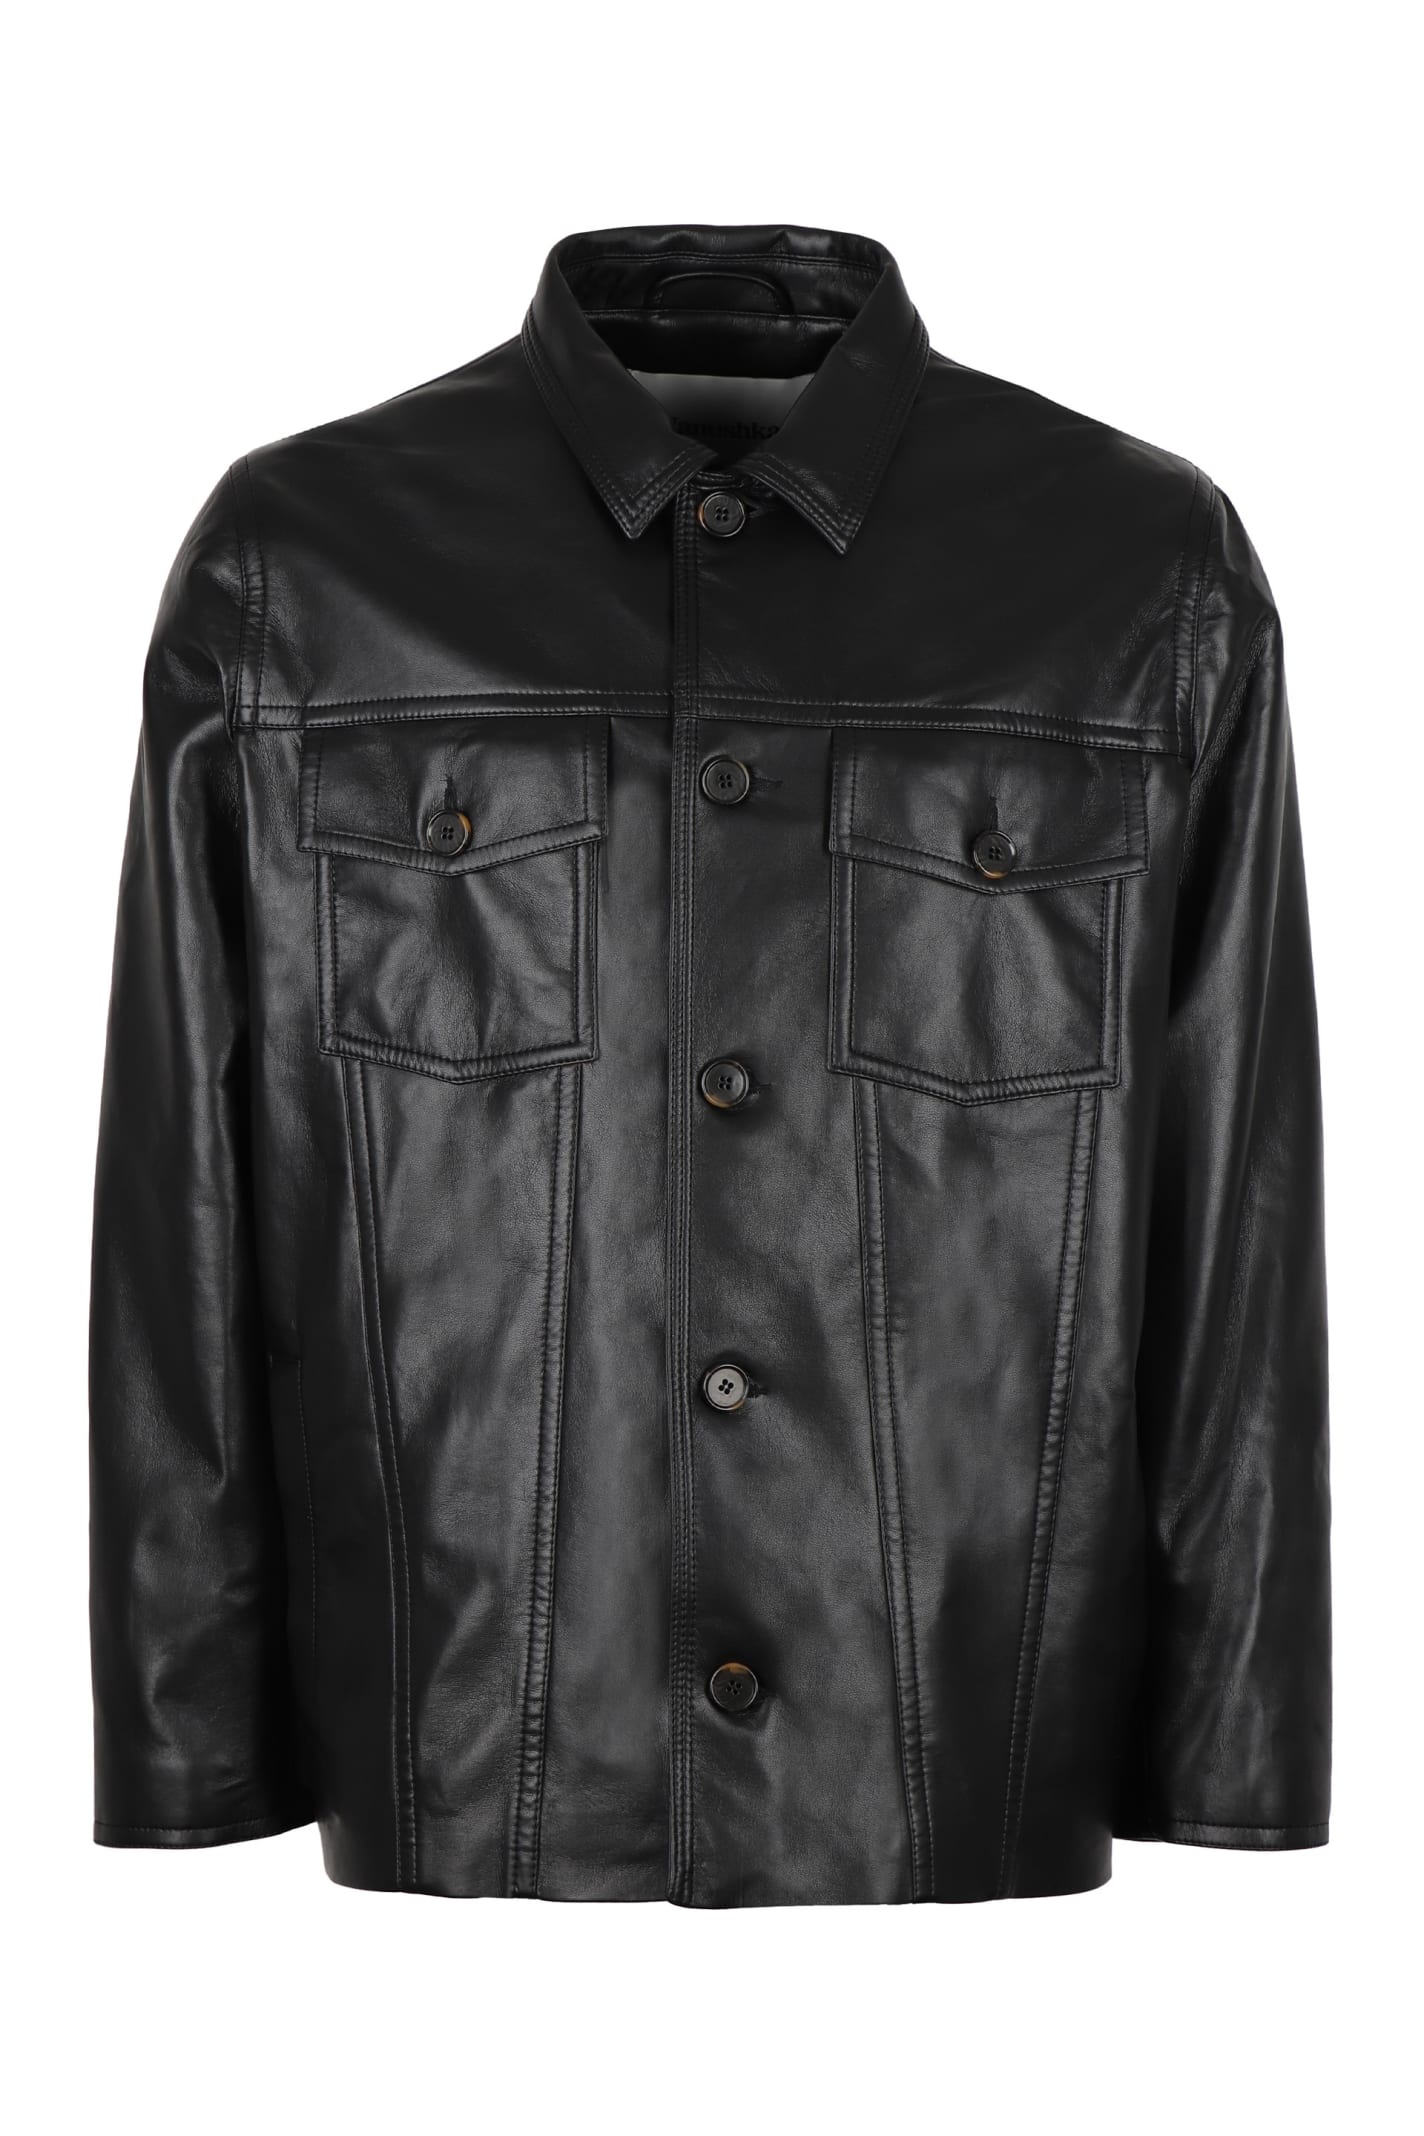 Nanushka Cody Leather Jacket